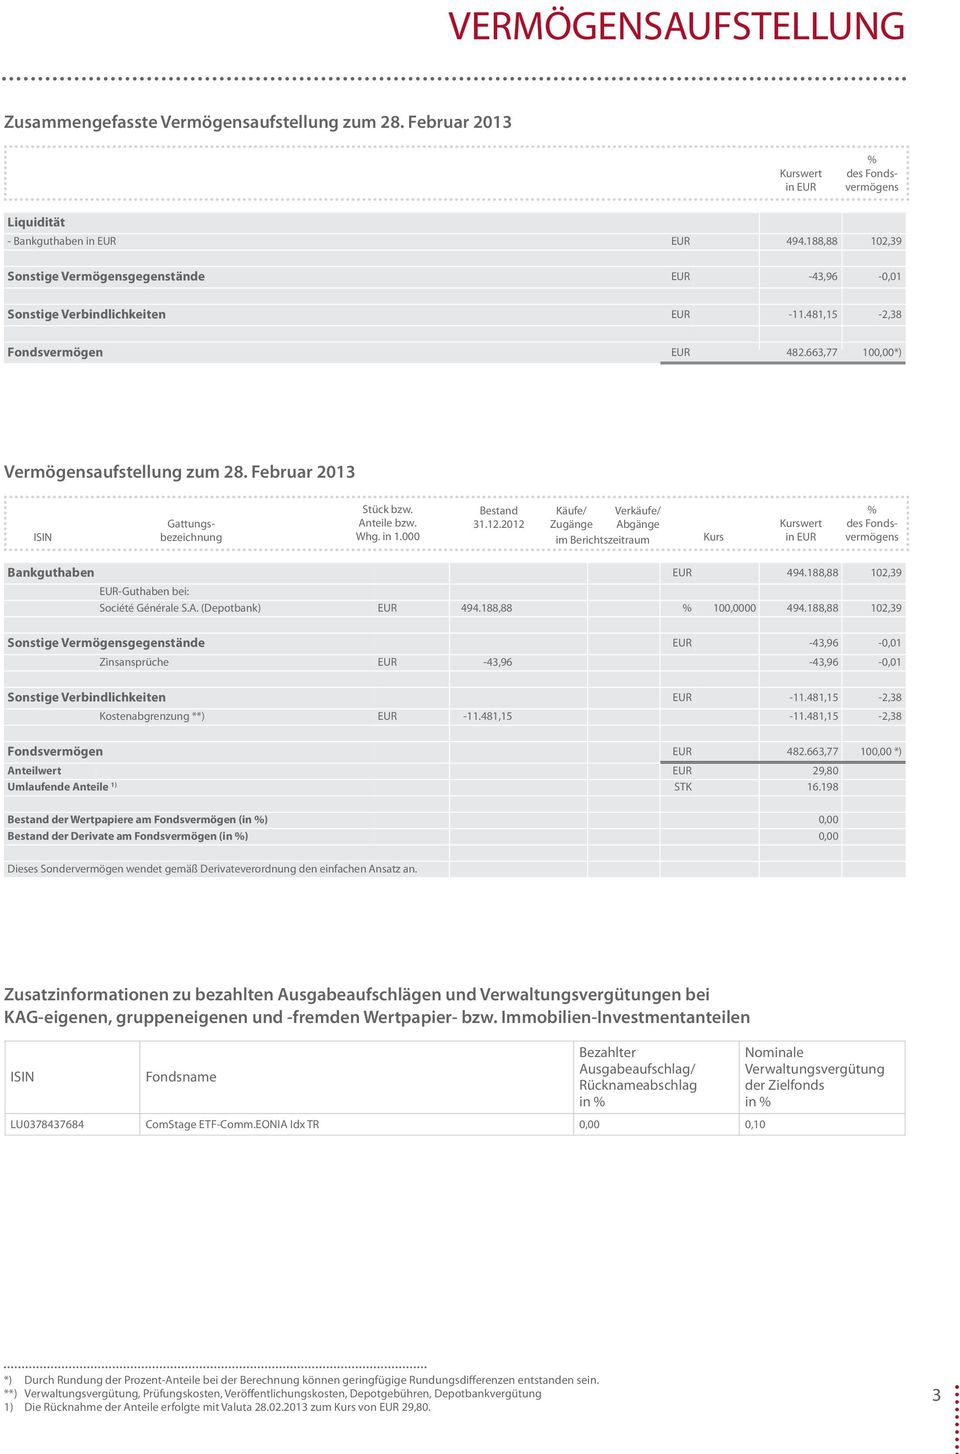 Februar 2013 ISIN % des Fondsvermögens Gattungsbezeichnung Stück bzw. Anteile bzw. Whg. in 1.000 Bestand 31.12.